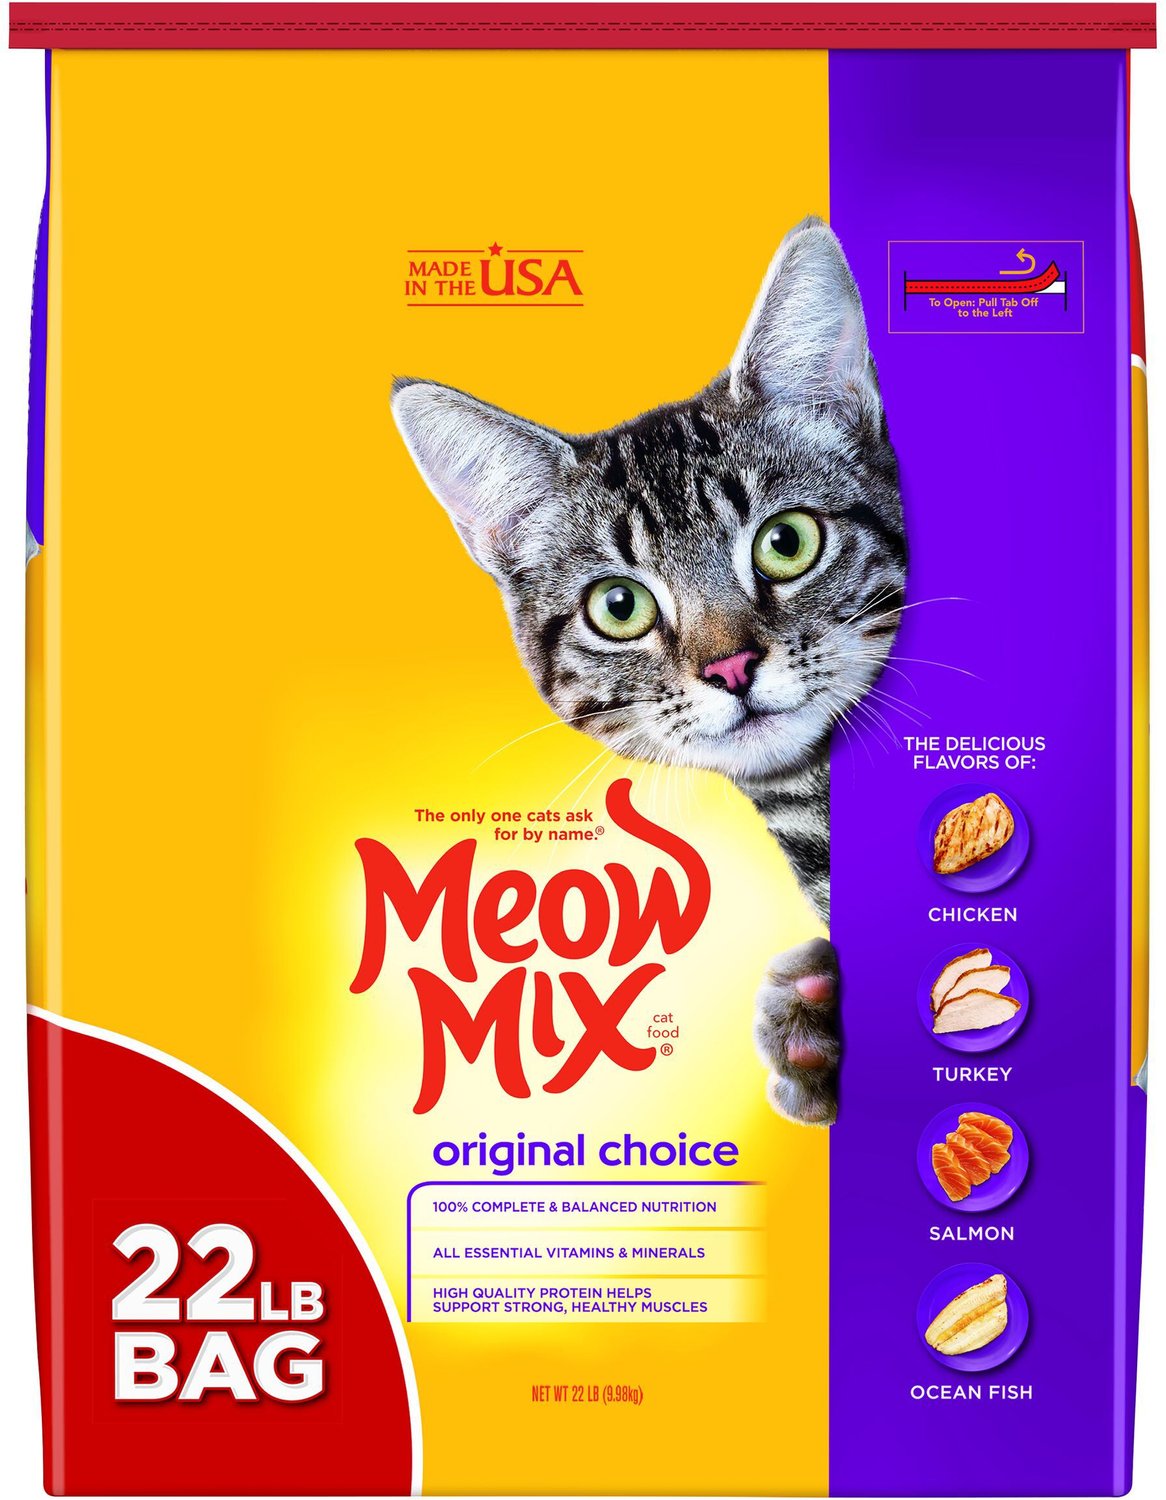 MEOW MIX Original Choice Dry Cat Food 